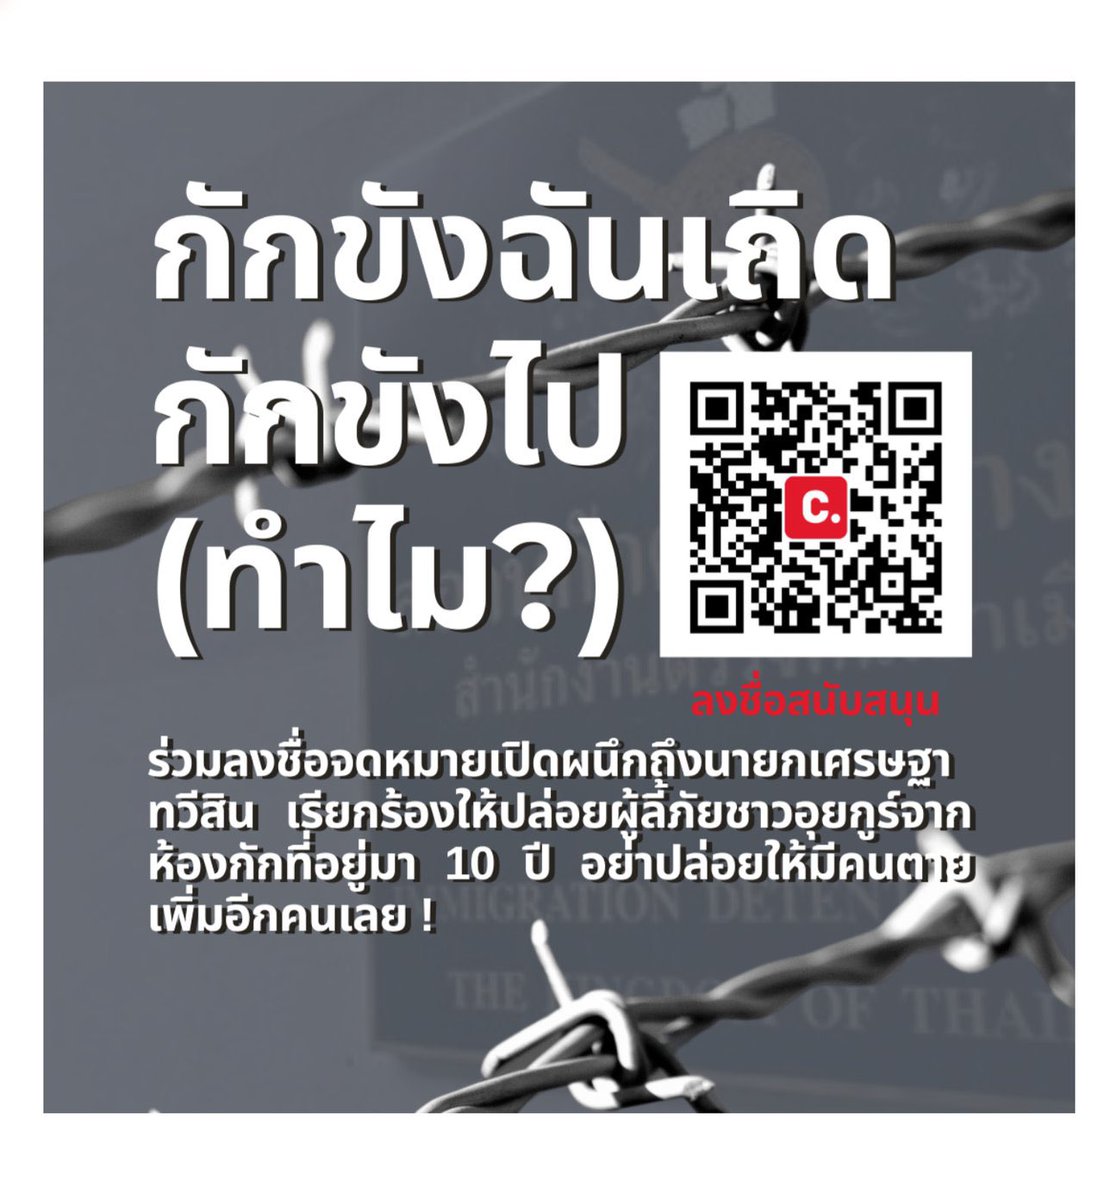 ด่วน!!! ร่วมกันลงชื่อส่งจดหมายเปิดผนึกถึงนายกเศรษฐา เรียกร้องปล่อยตัวผู้ลี้ภัยชาวอุยกูร์ที่ถูกรัฐไทยคุมขังมานาน 10 ปี เพื่อวันที่ 14 มีนาคม รายชื่อทั้งหมดนี้จะได้ถูกยื่นให้สภาต่อไป

ลงชื่อ #ยุติการกักตัวอุยกูร์  
change.org/10yearstoolong

#10ปีมันนานเกินไป